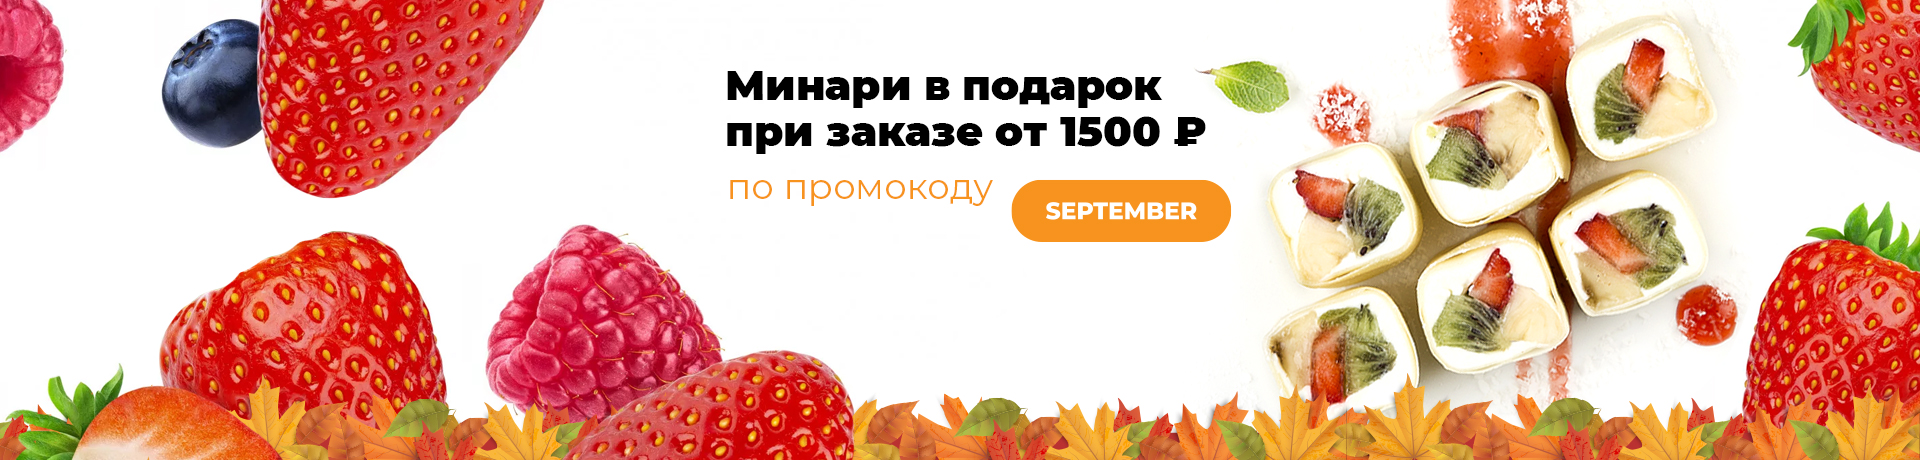 Минари в подарок  при заказе от 1500 рублей по промокоду SEPTEMBER